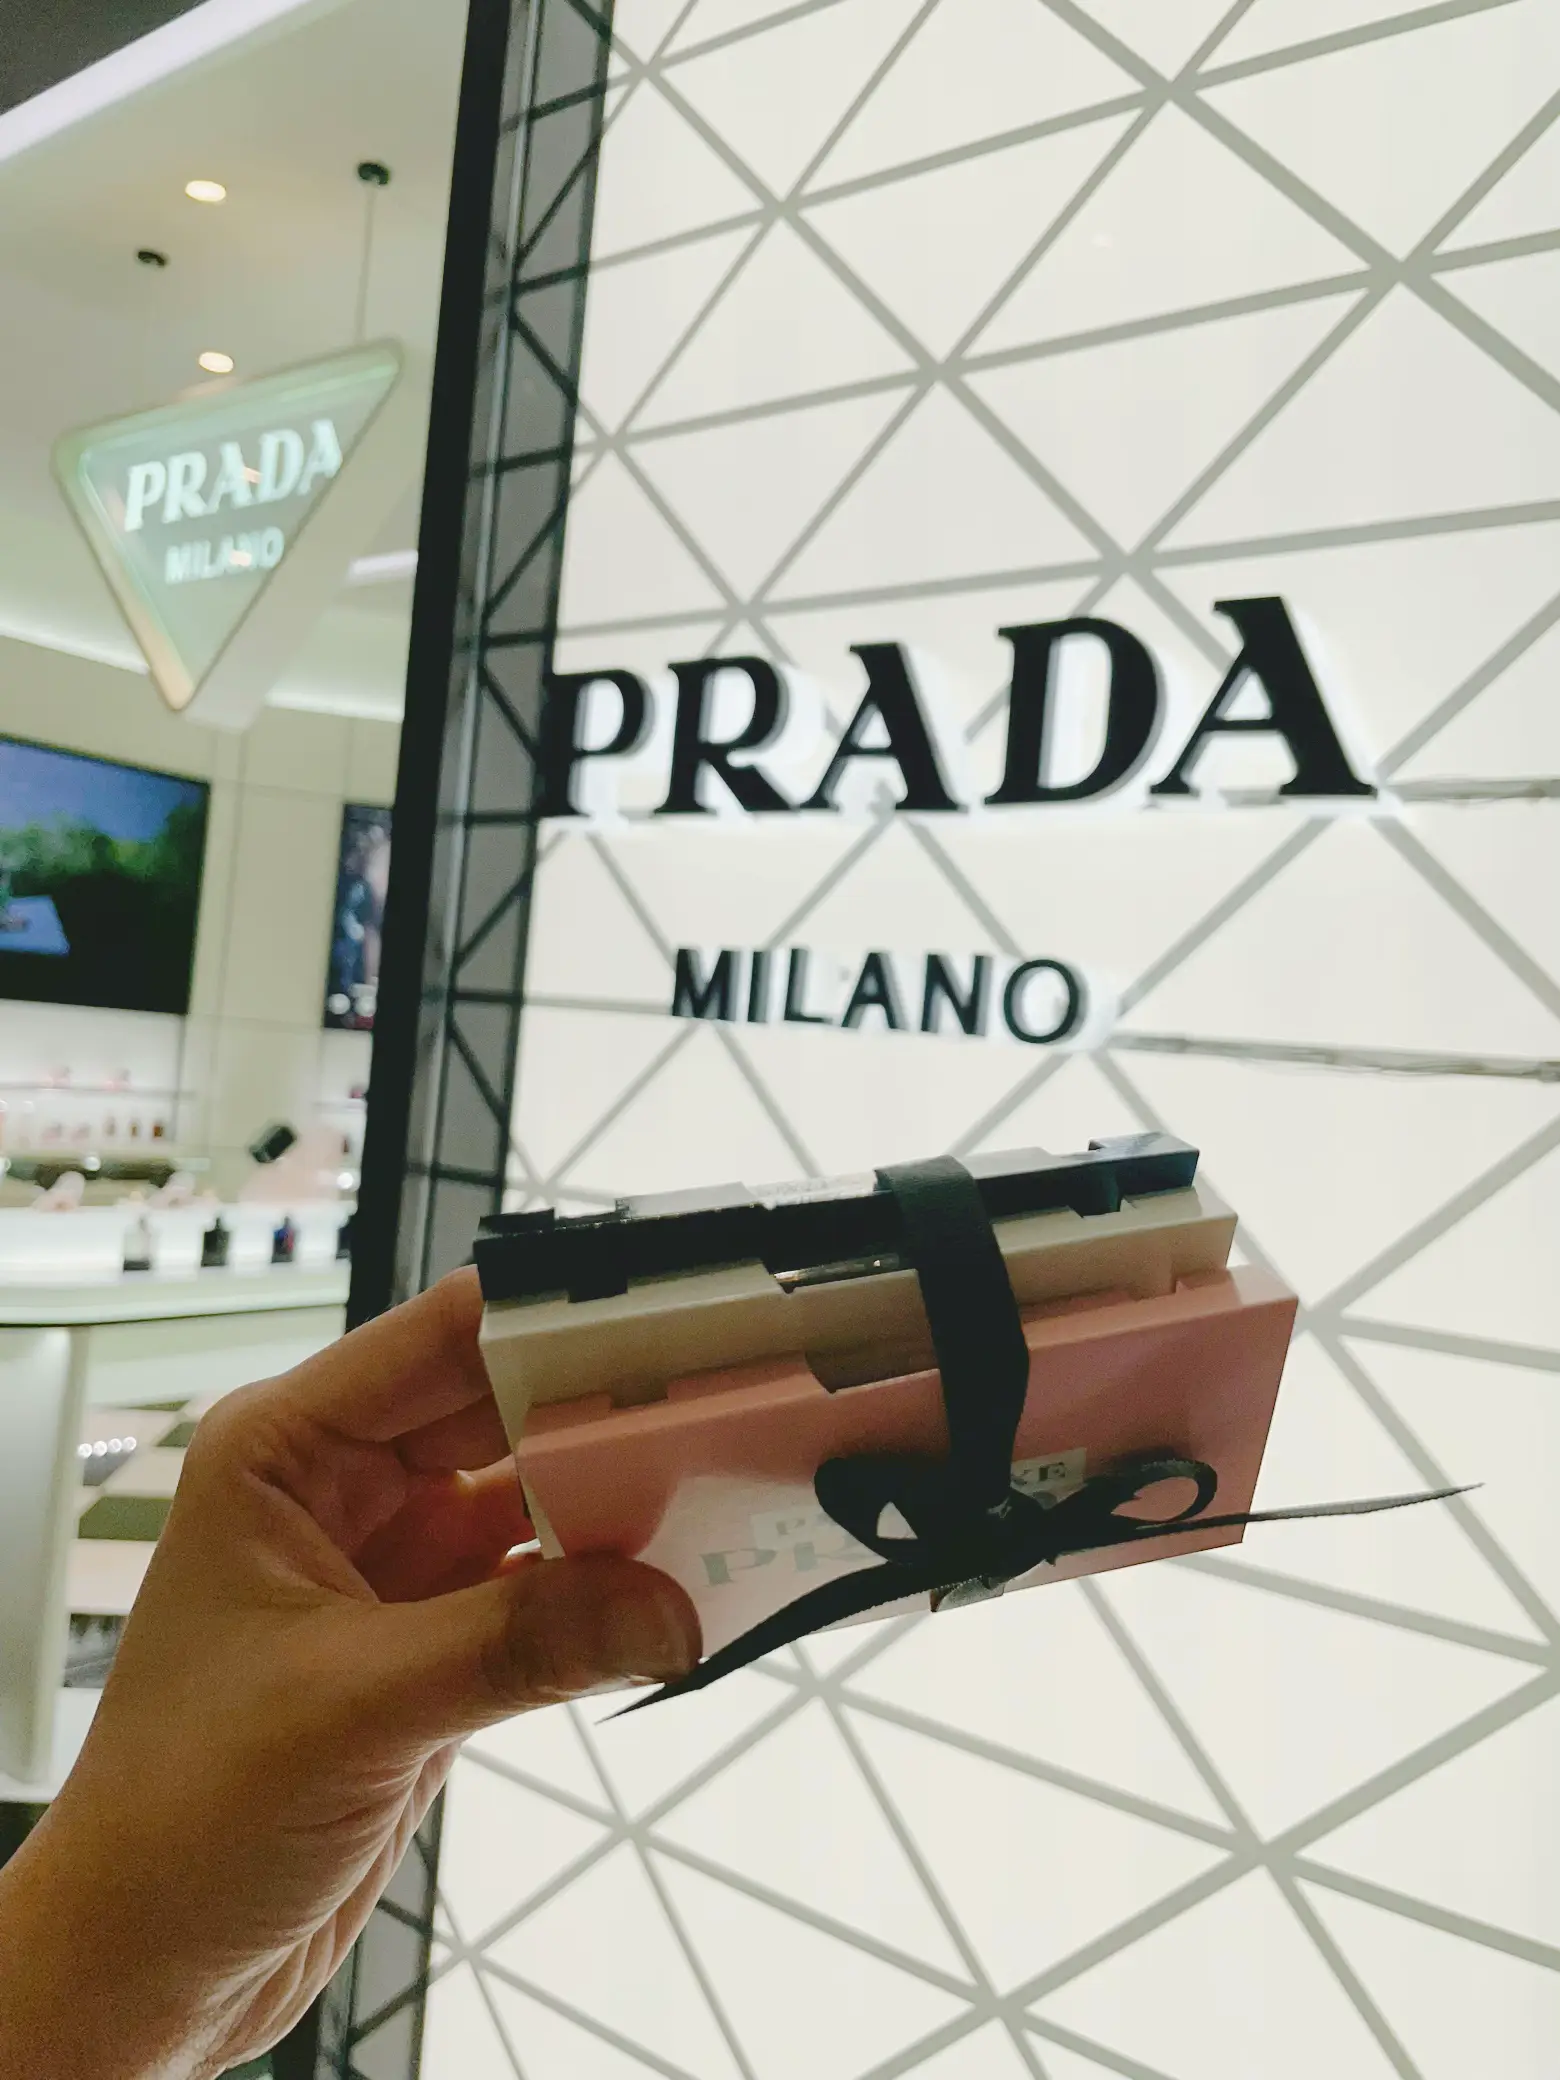 Free 3pc Prada perfume samples 🇸🇬's images(1)